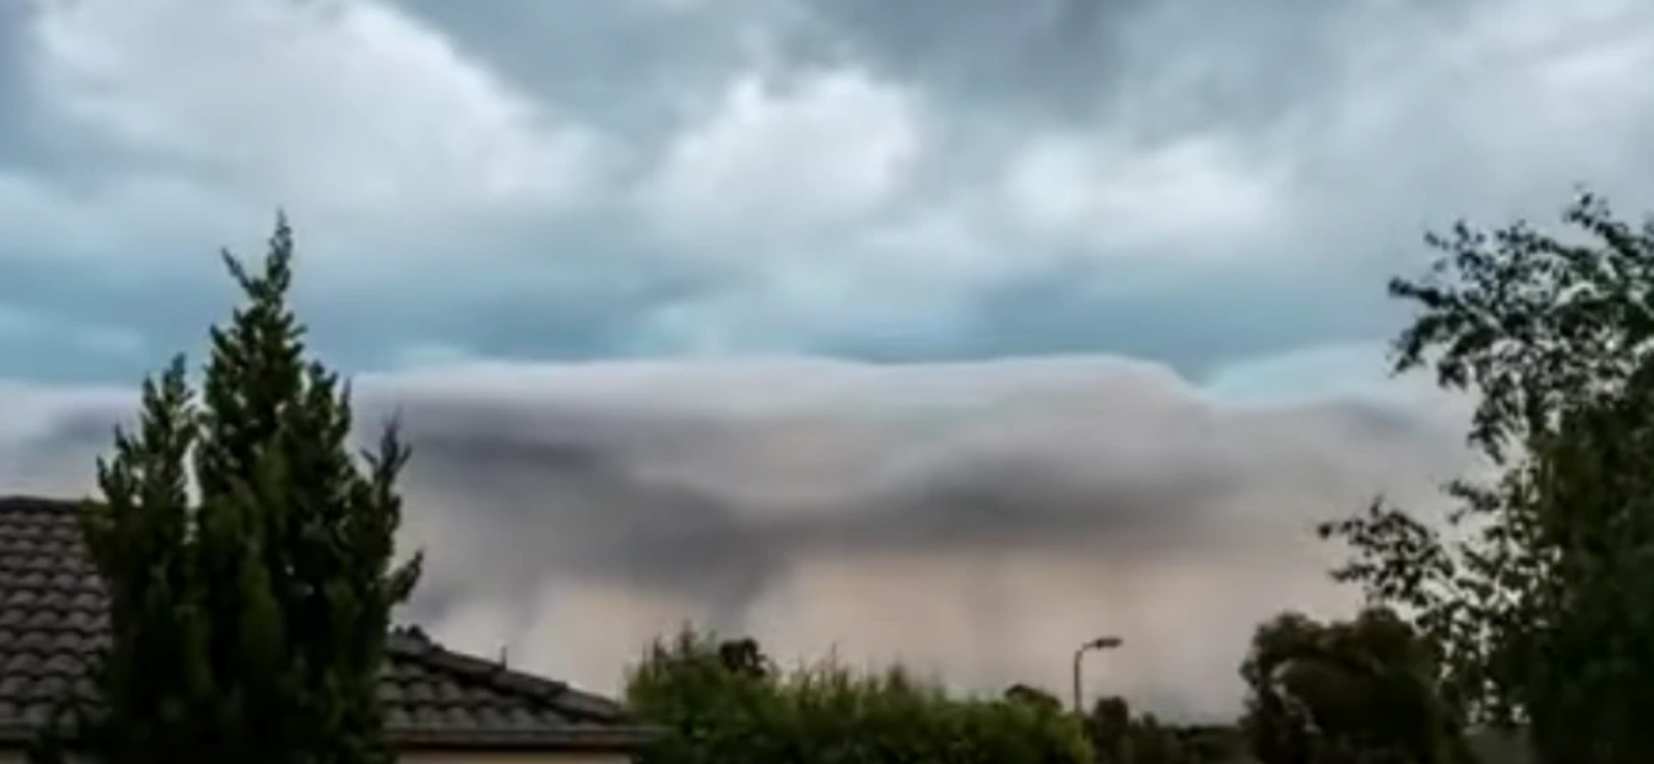 Captaron en un video una terrorífica tormenta que generó preocupación y se volvió viral